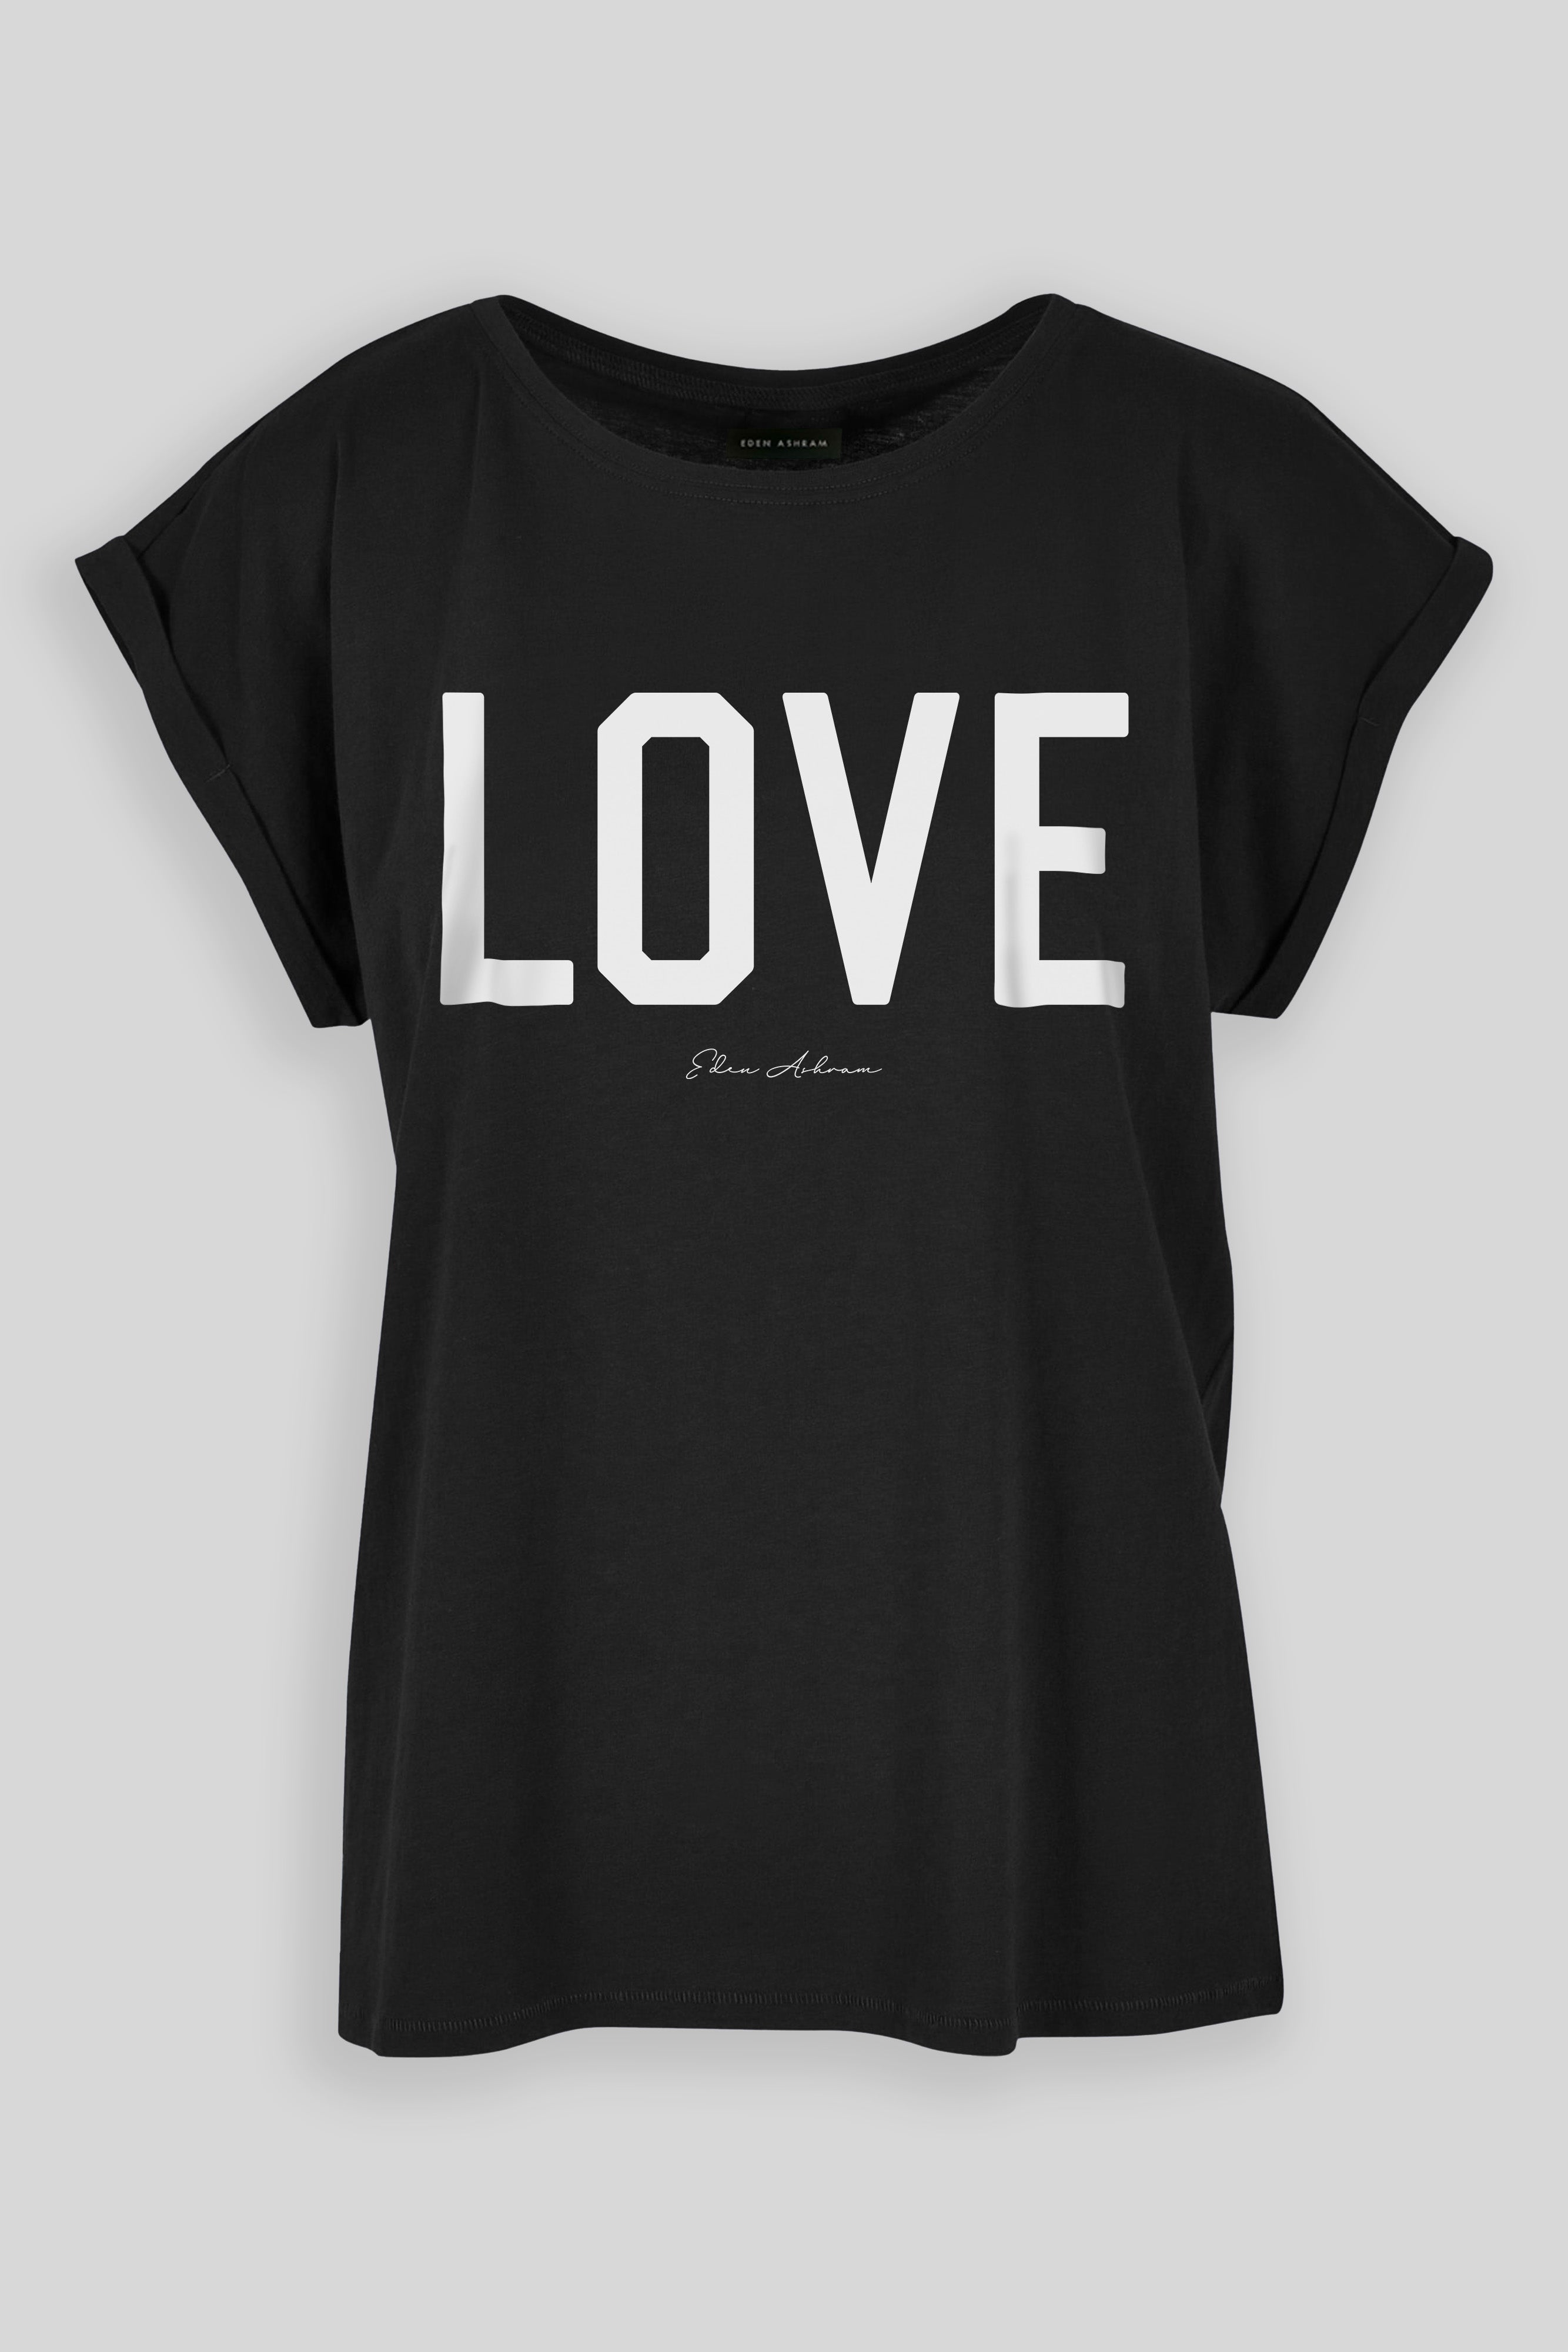 EDEN ASHRAM LOVE Cali T-Shirt Vintage Black